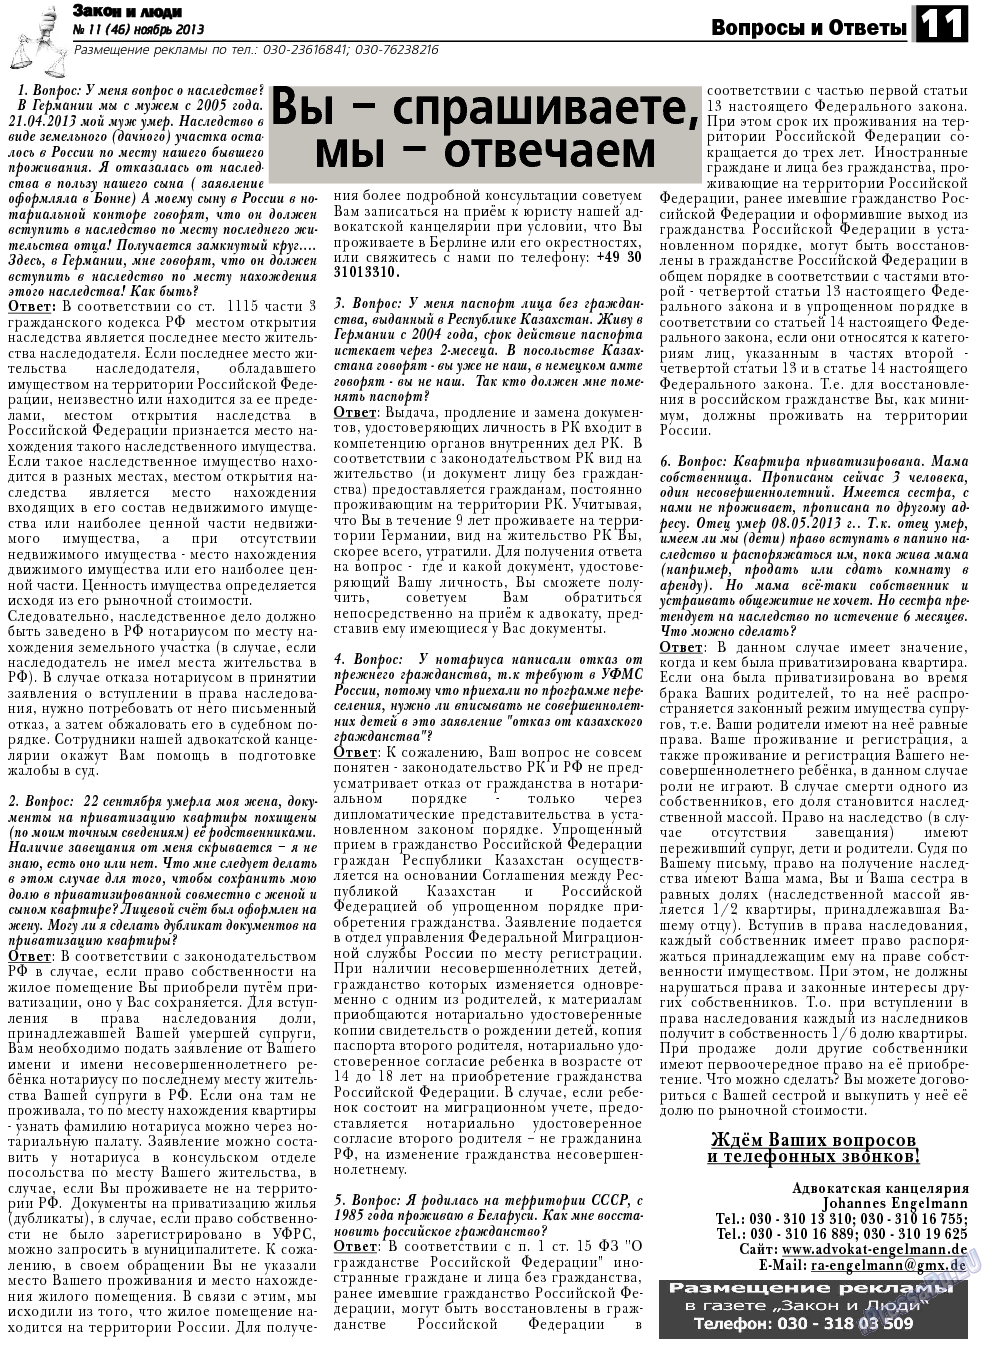 Закон и люди, газета. 2013 №11 стр.11